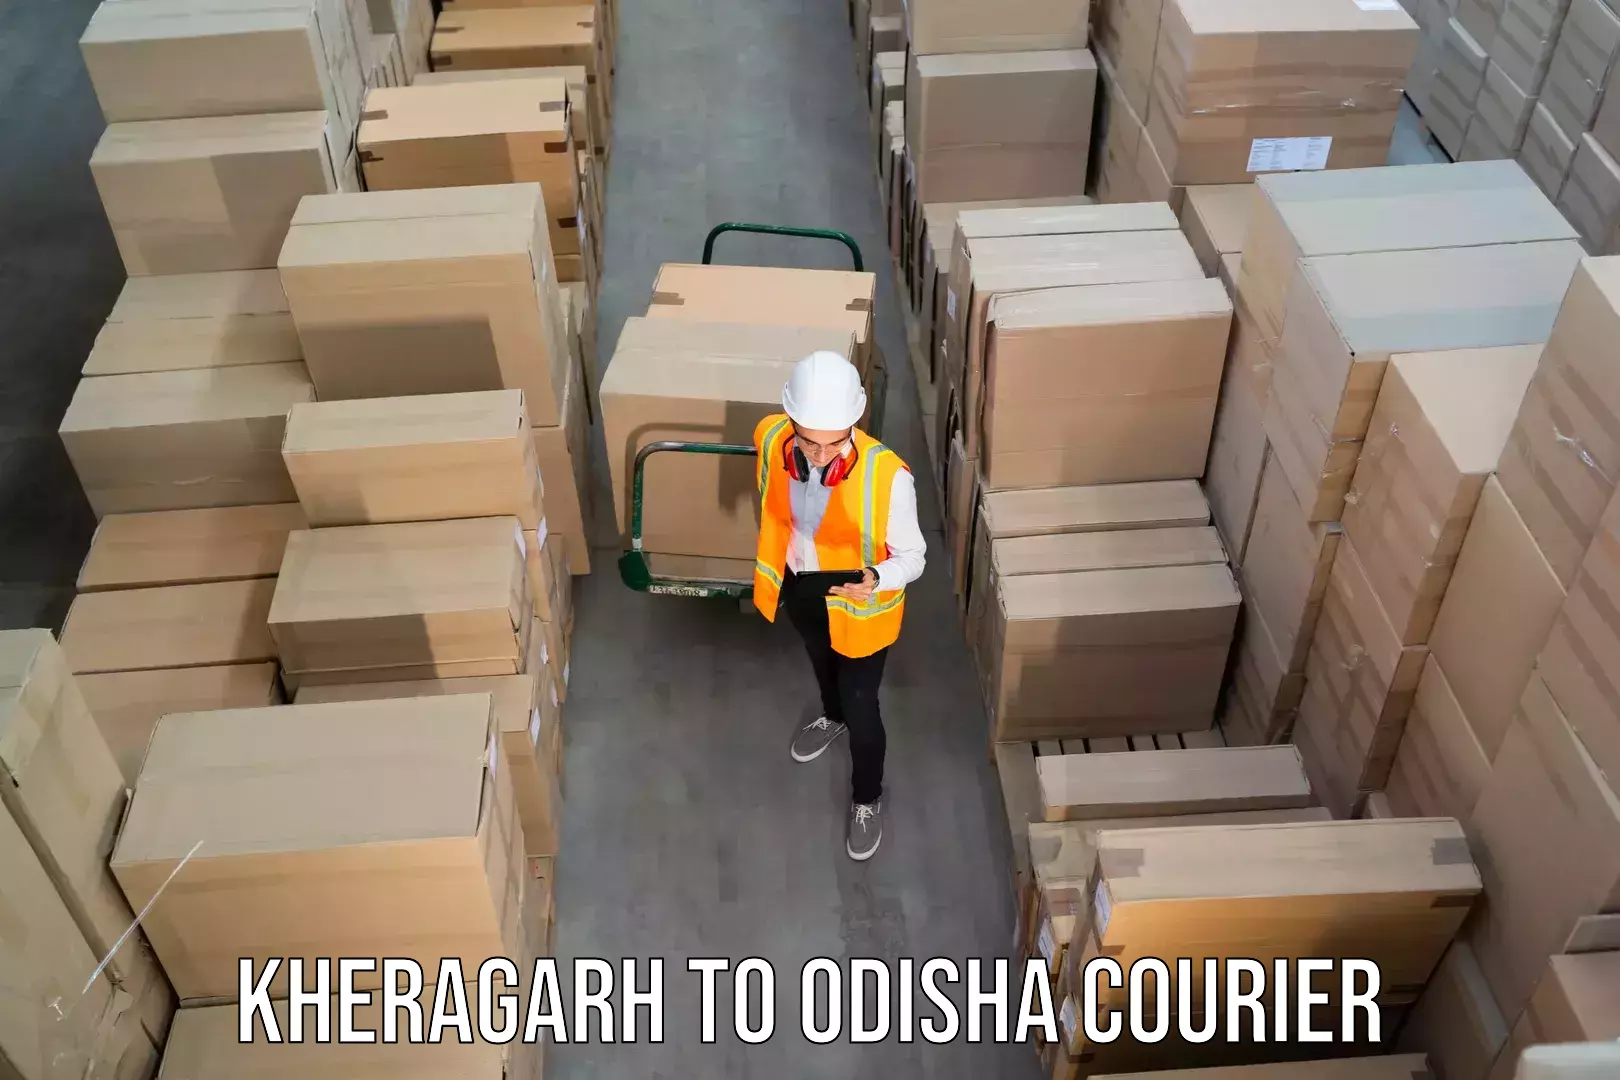 Business shipping needs Kheragarh to Balipokhari